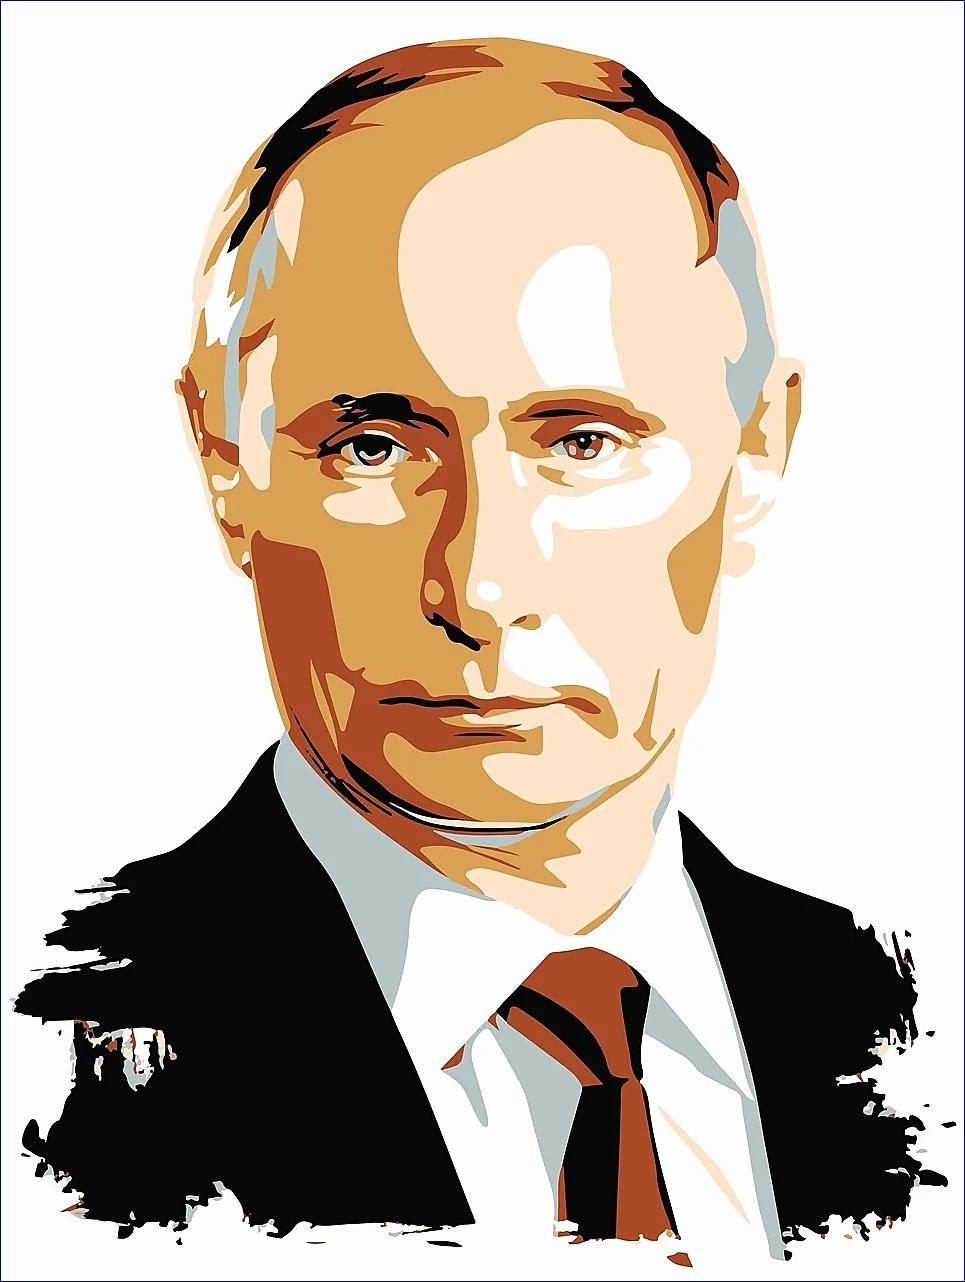 Potíž je, že sankce zvyšují Putinovy zisky